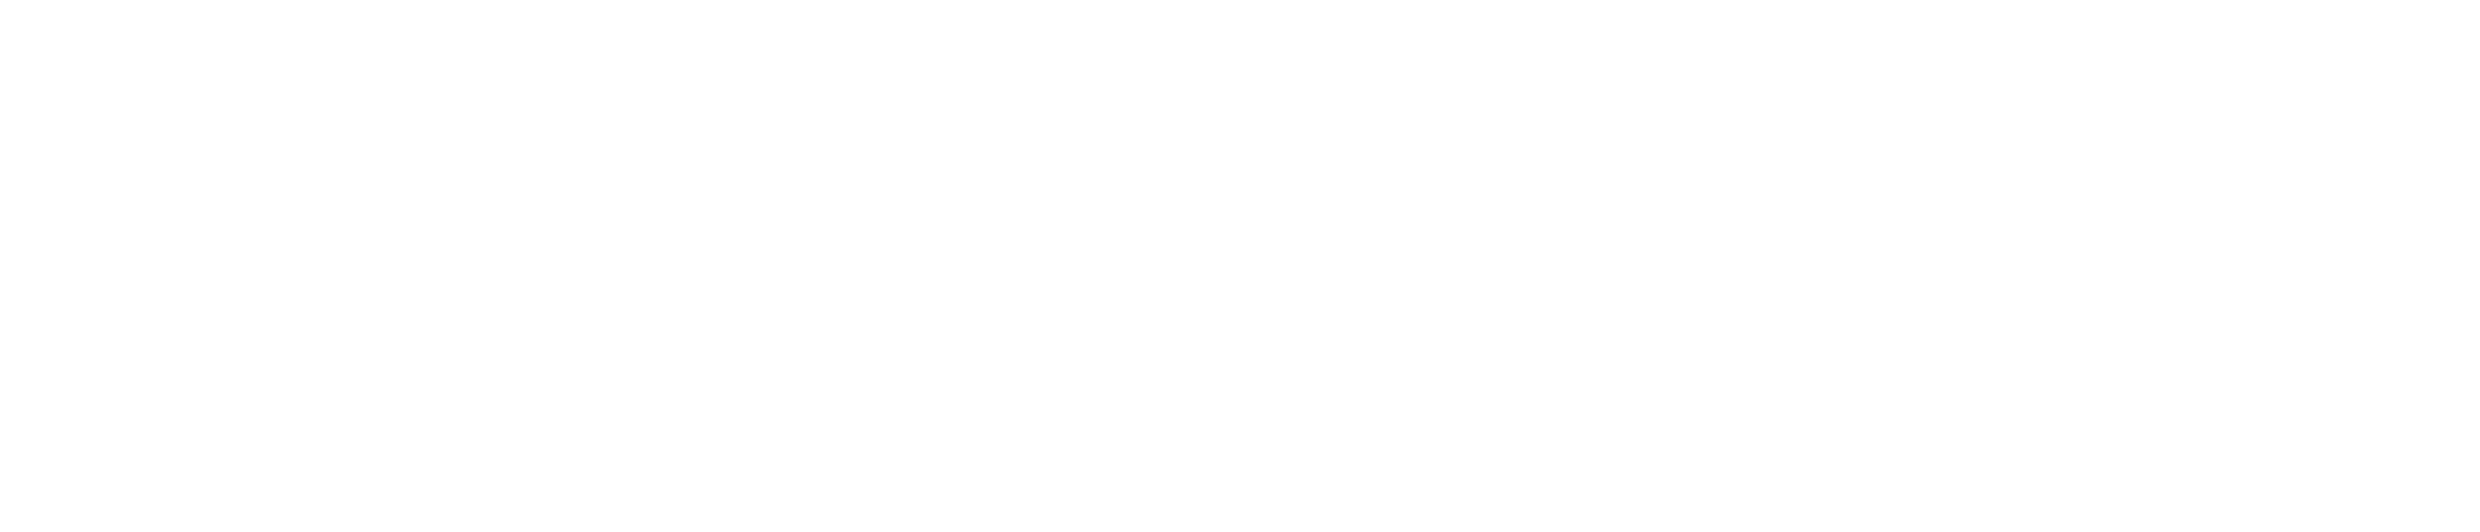 MAWA.CO